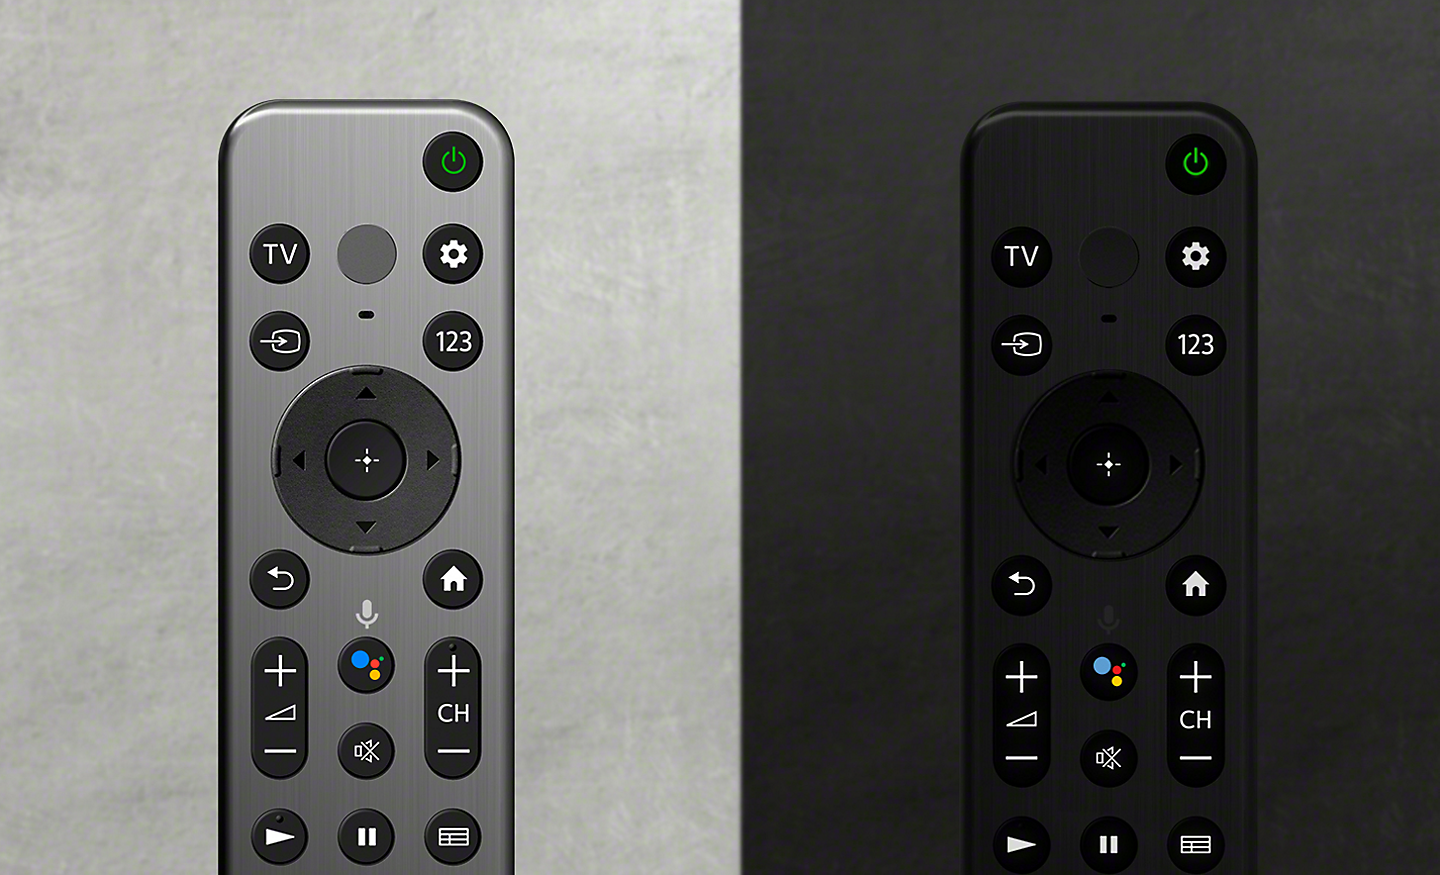 תמונה של שני מכשירי שלט רחוק, בצד ימין בצבע כסף ובצד שמאל בצבע שחור